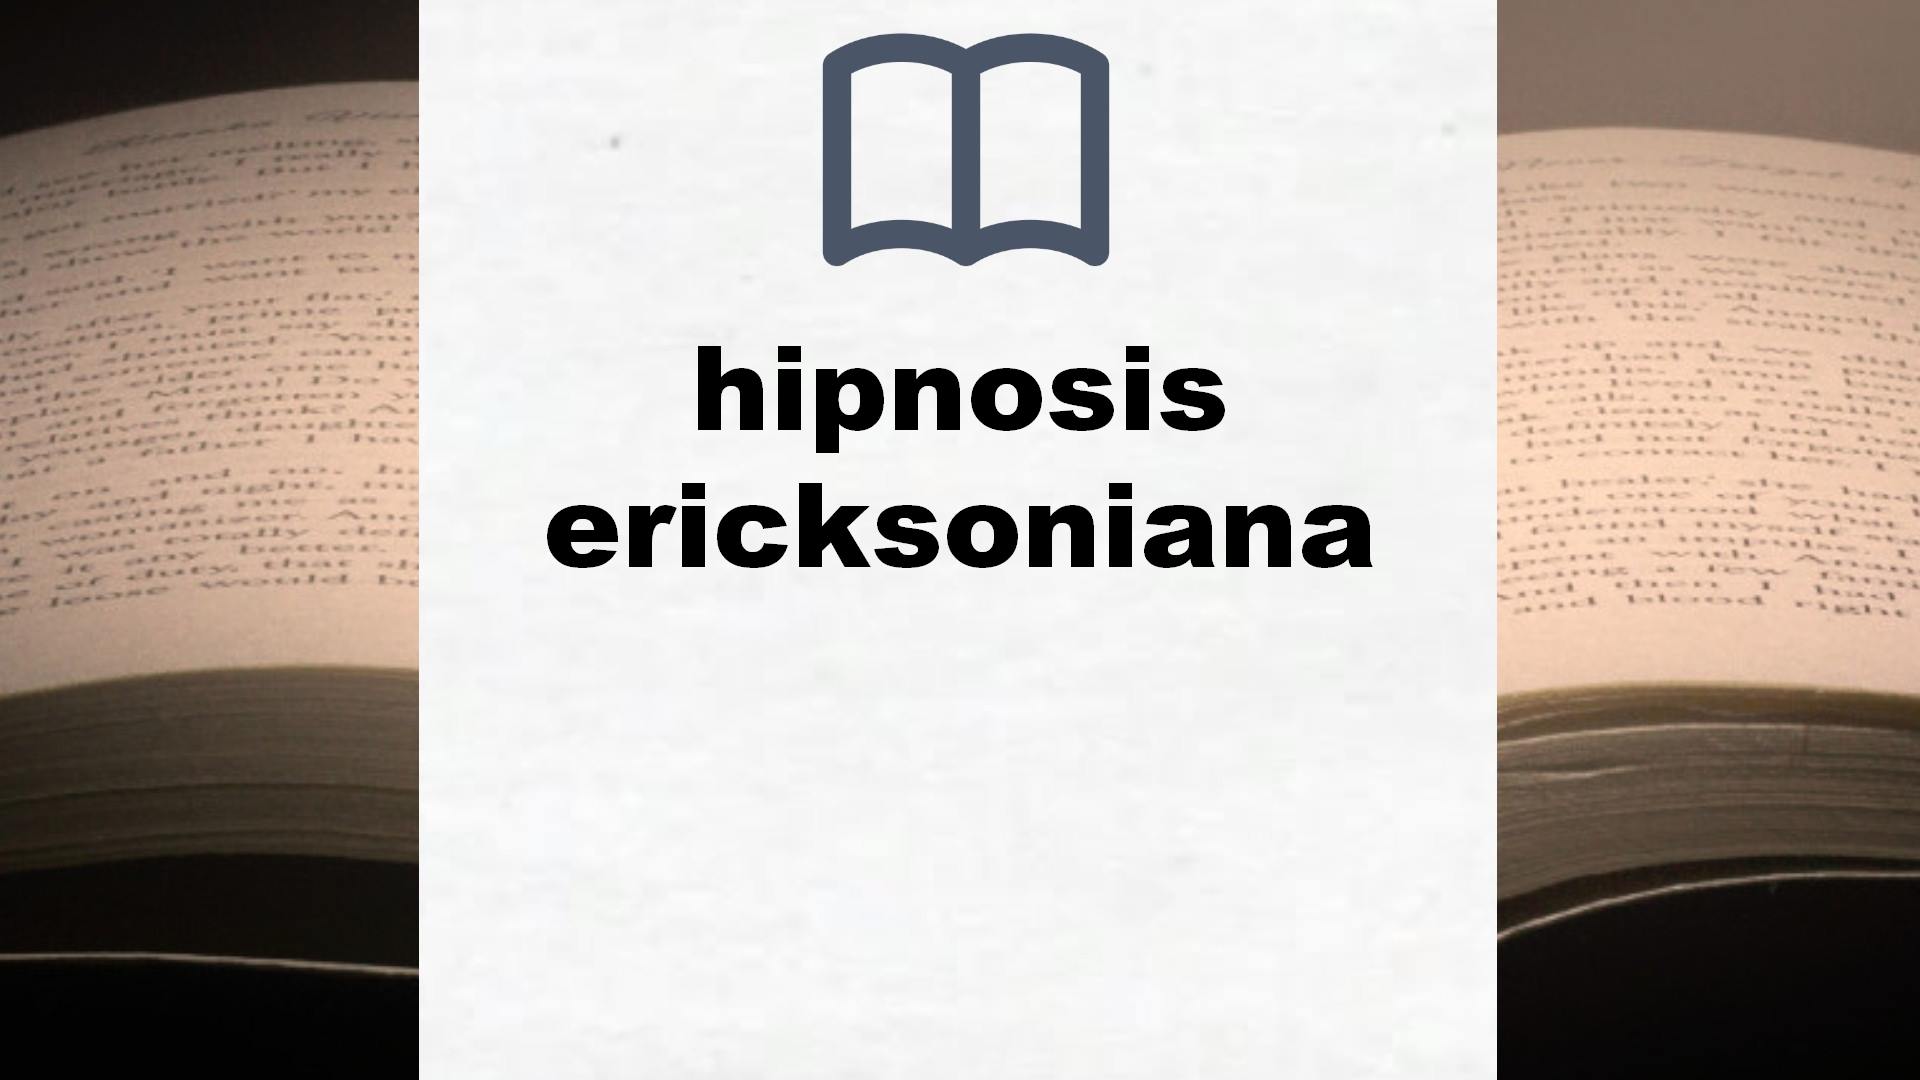 Libros sobre hipnosis ericksoniana